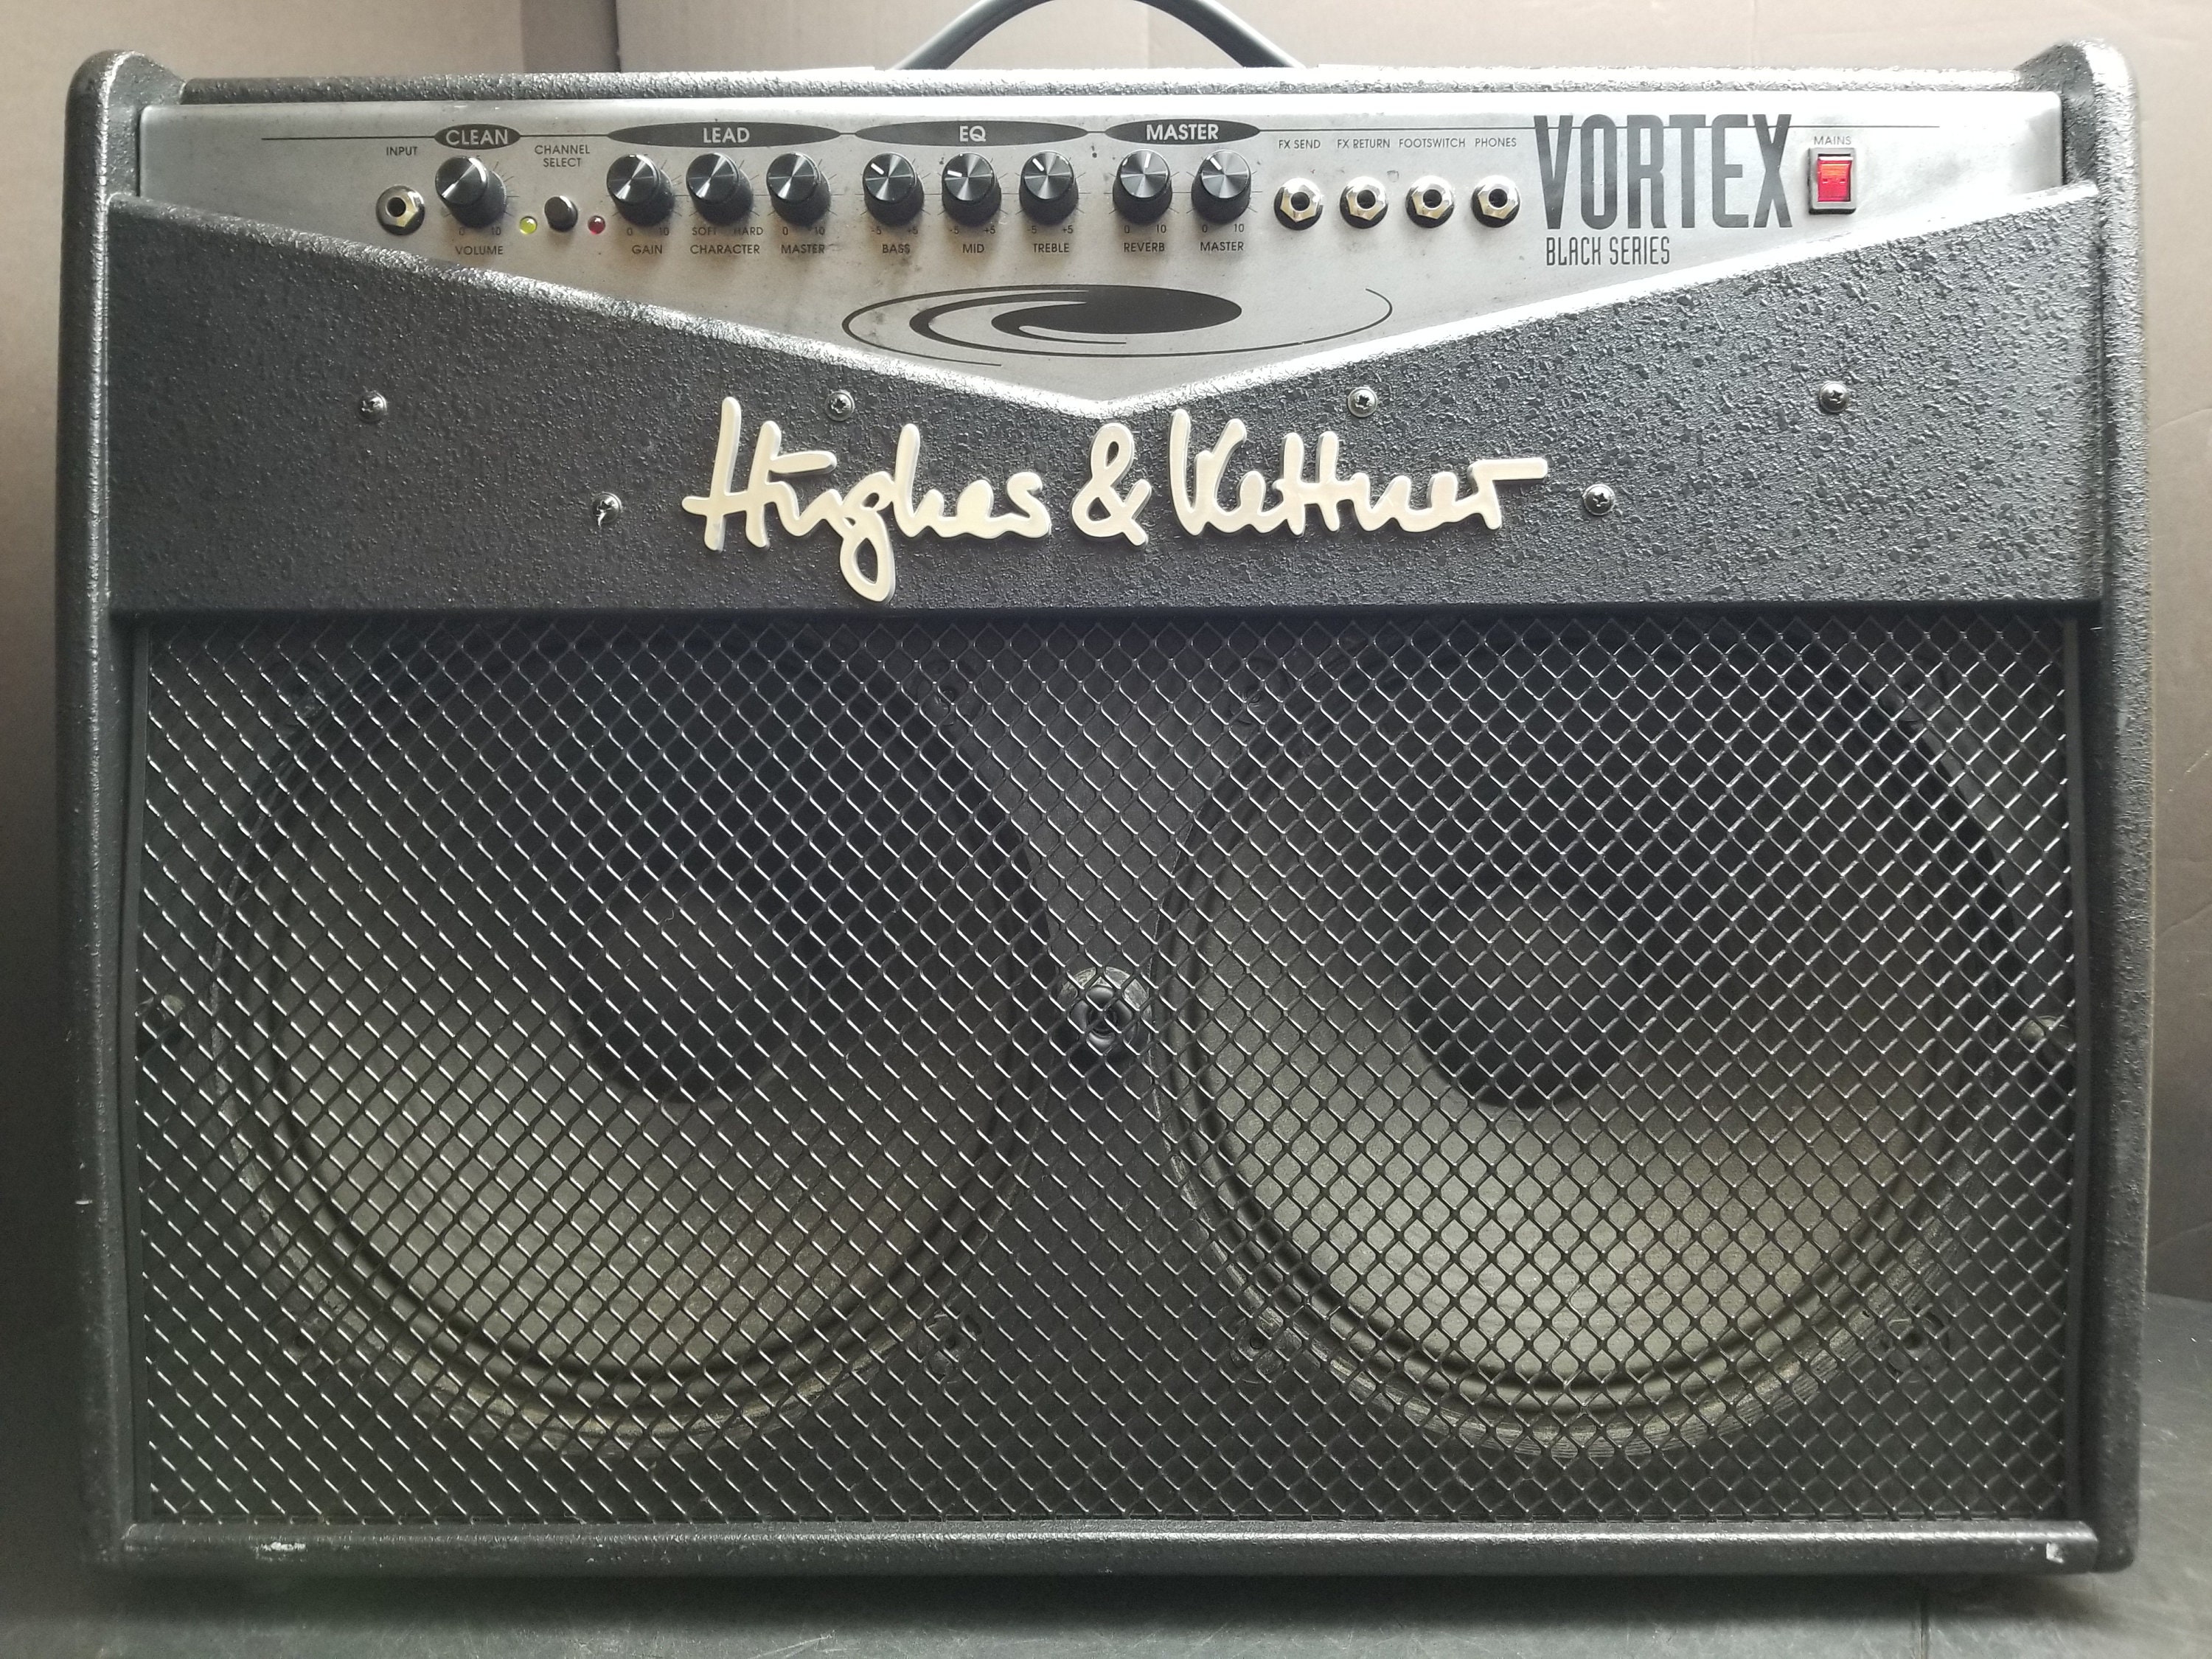 Hughes & Kettner Vortex Black Series Combo Guitar Amplifier - Etsy